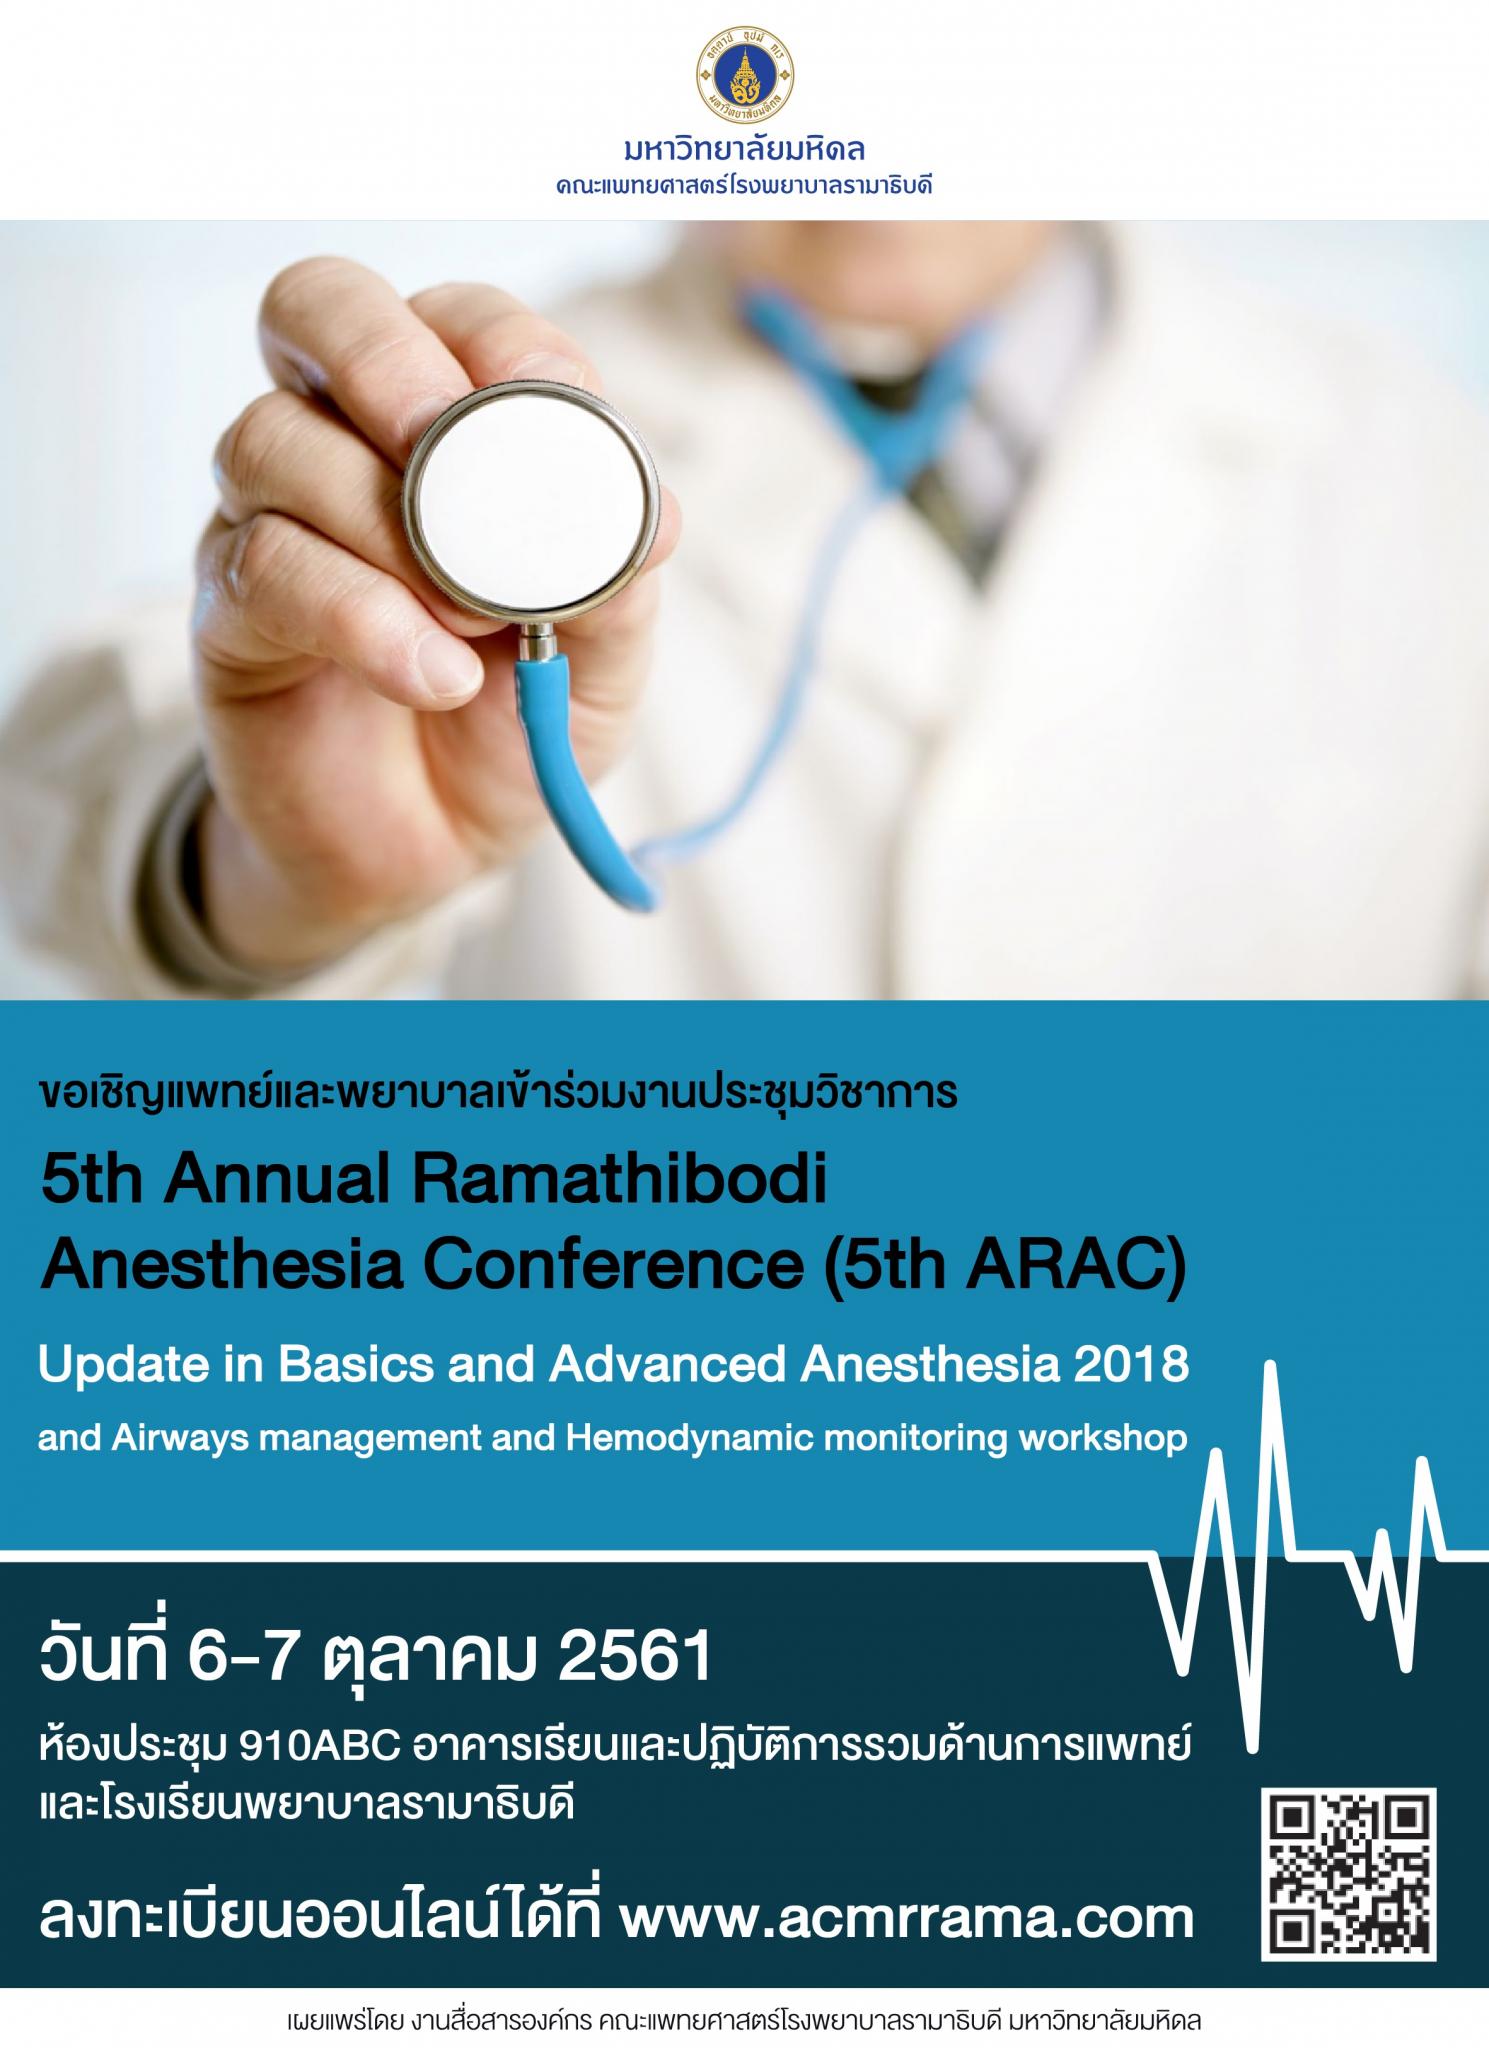 ขอเชิญแพทย์และพยาบาล เข้าร่วมงานประชุมวิชาการ 5th Annual Ramathibodi Anesthesia Conference (5th ARAC)